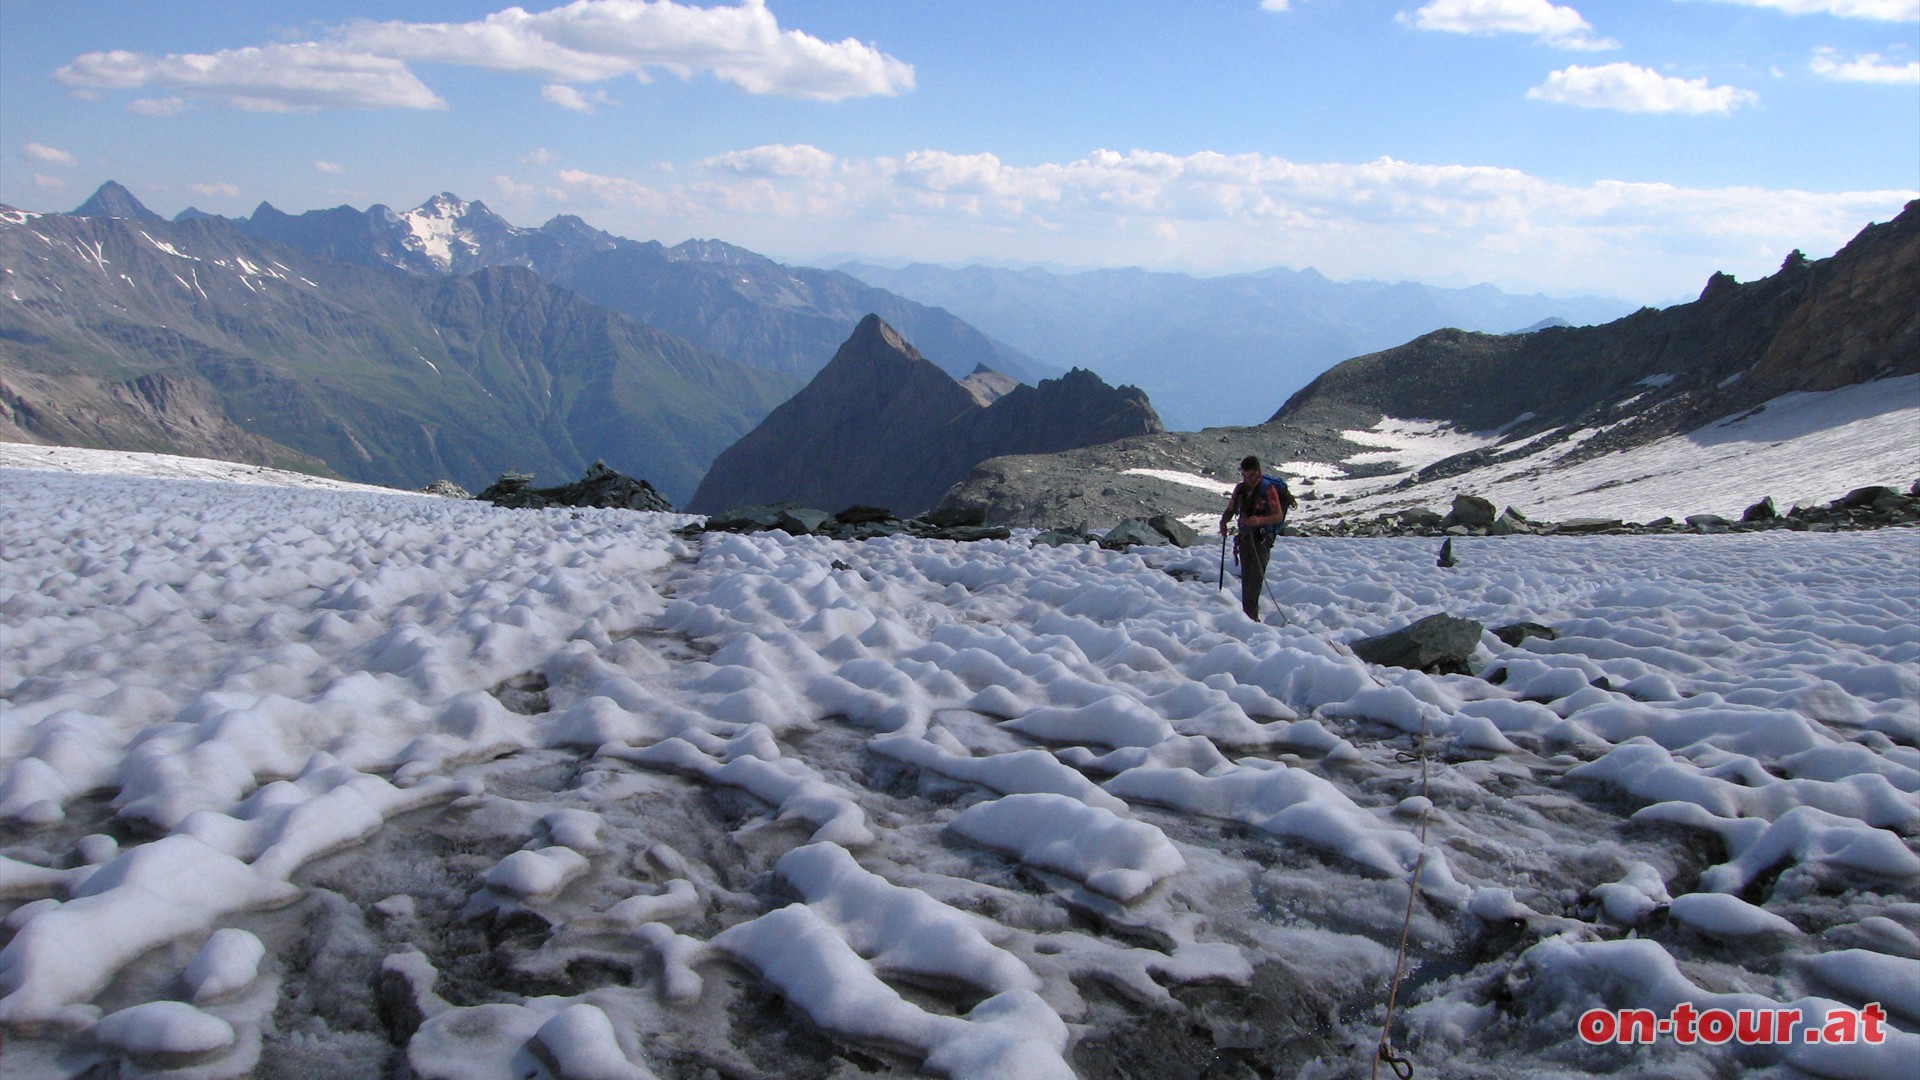 Gletscherspalten knnen eine Breite von mehreren Metern und Tiefen bis ber 20 Meter erreichen. 
Selbst bei einer dickeren Schneedecke ber dem Gletscher sollte auf Seil, Pickel, Steigeisen und Gurt nicht verzichtet werden. 